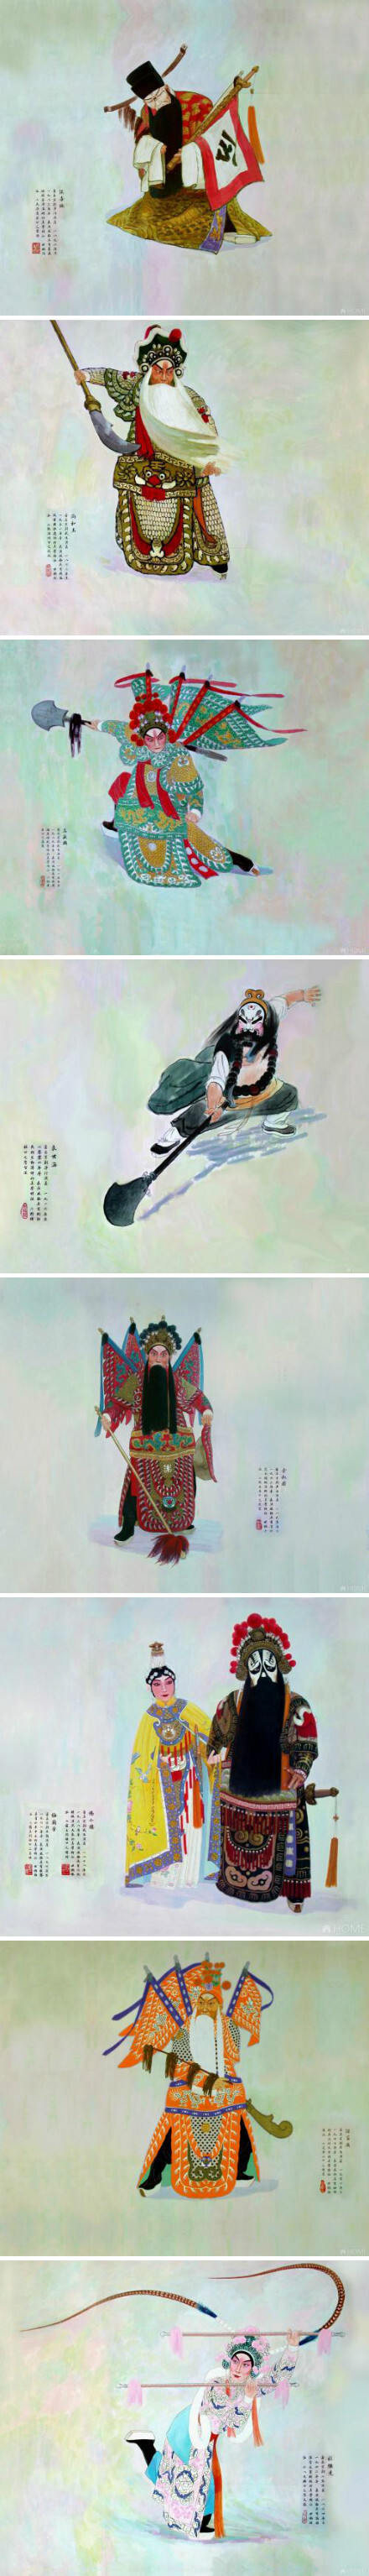 京剧人物画卷-张天翼《鼎盛三十六家图卷》 全面的了解国粹京剧人物的尚好质料.